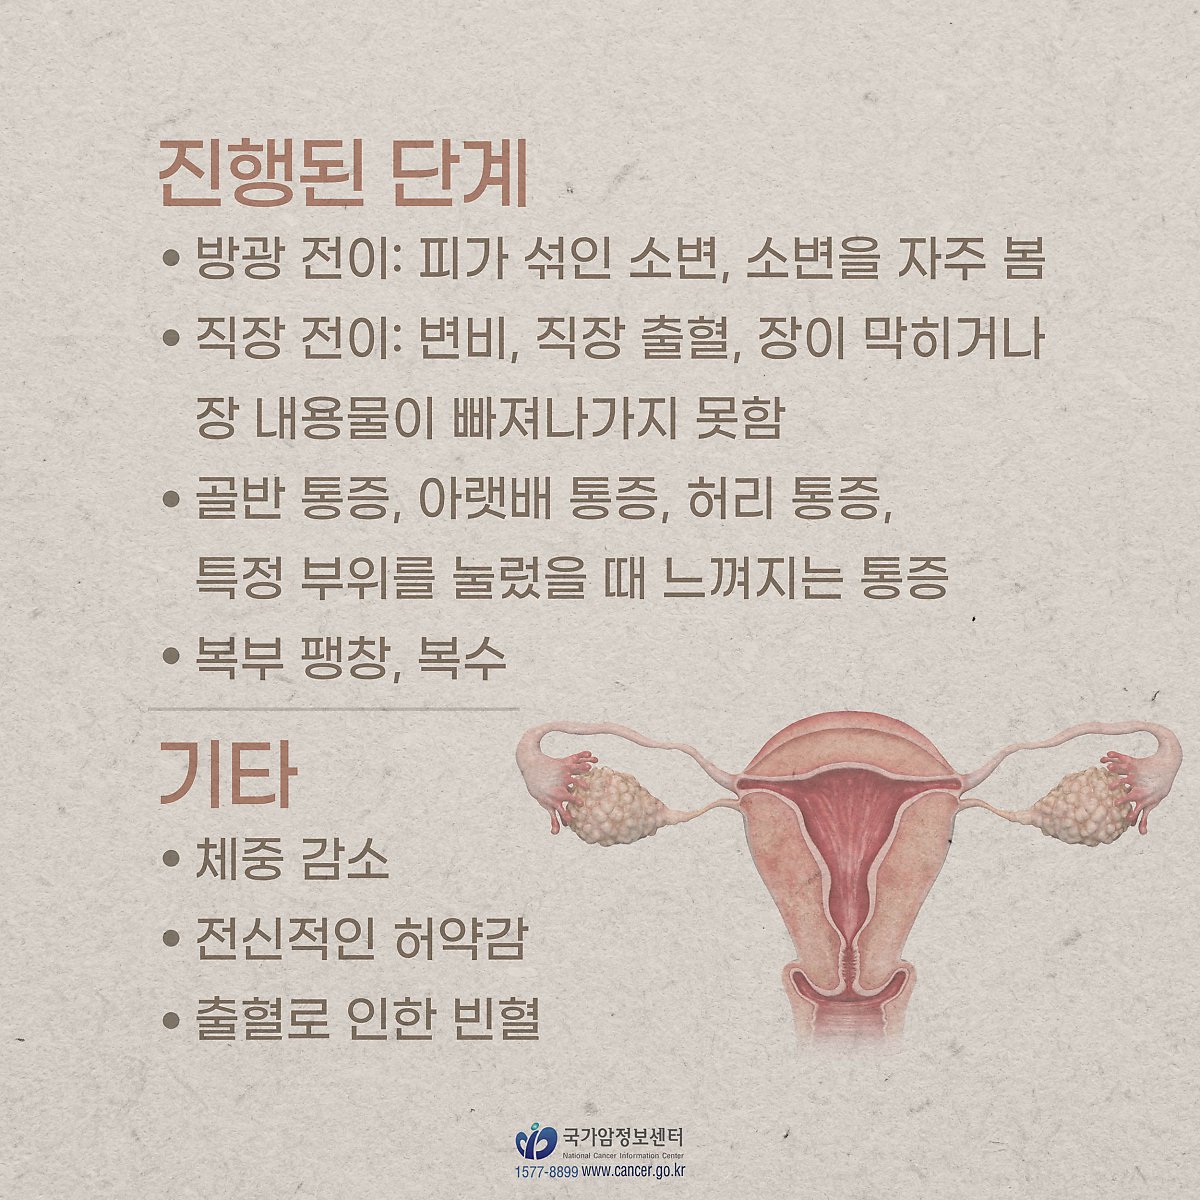 자궁내막암, 단계별로 나타나는 증상이 있다? #자궁암